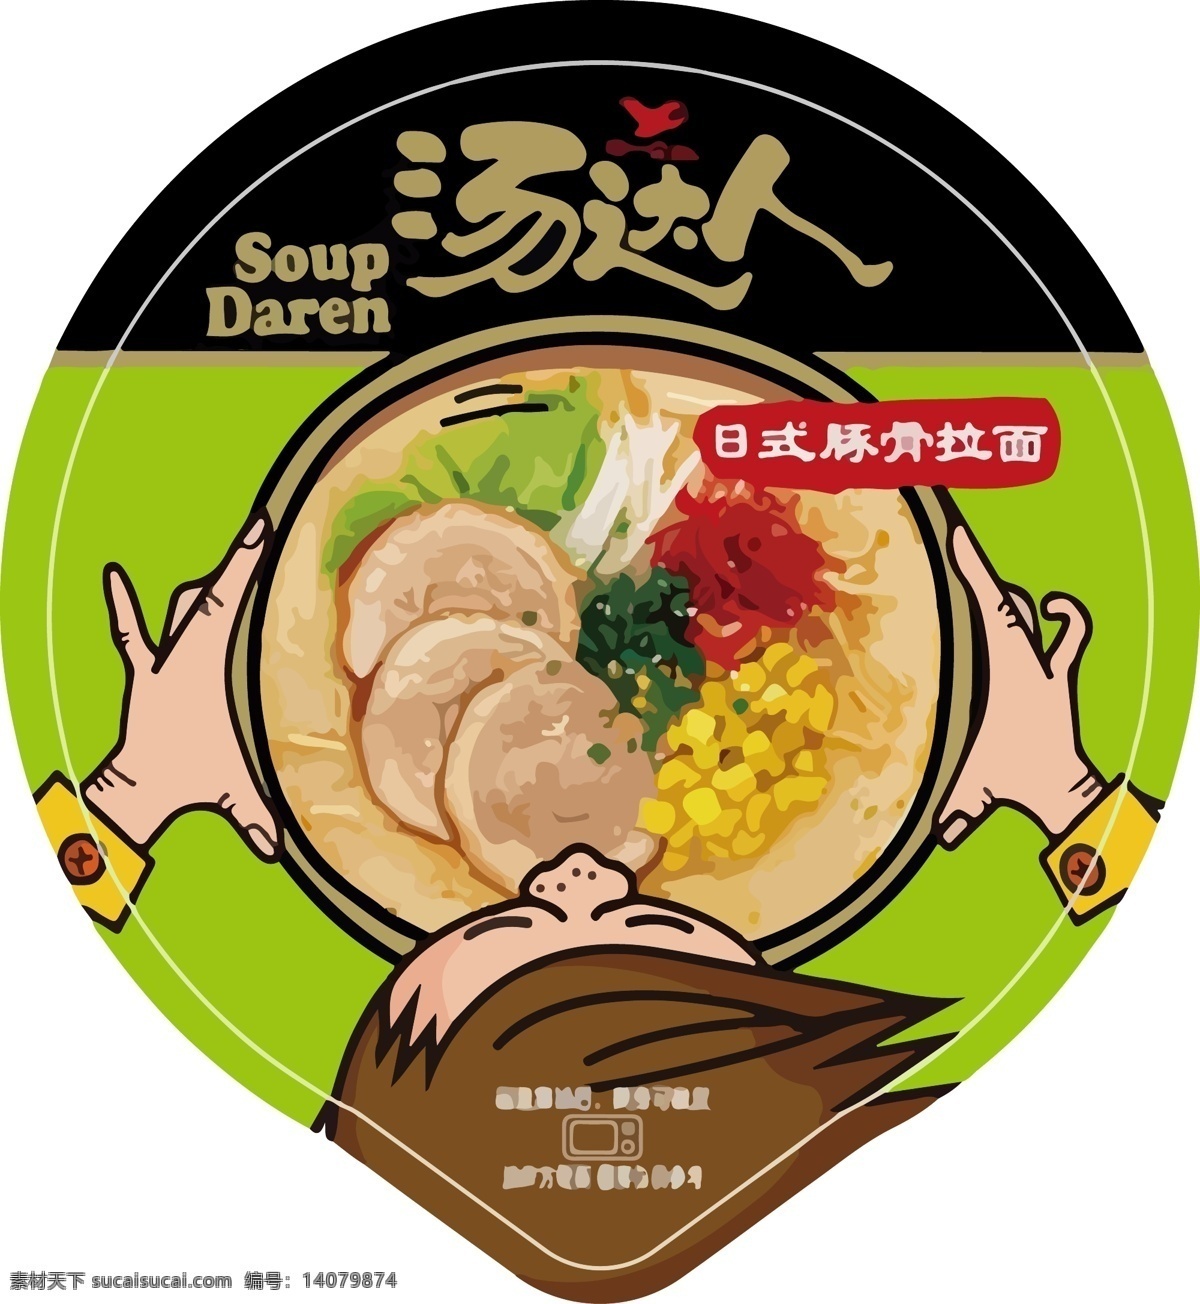 汤达人包装 汤达人 封面 浓汤 日式 拉面 包装 包装设计